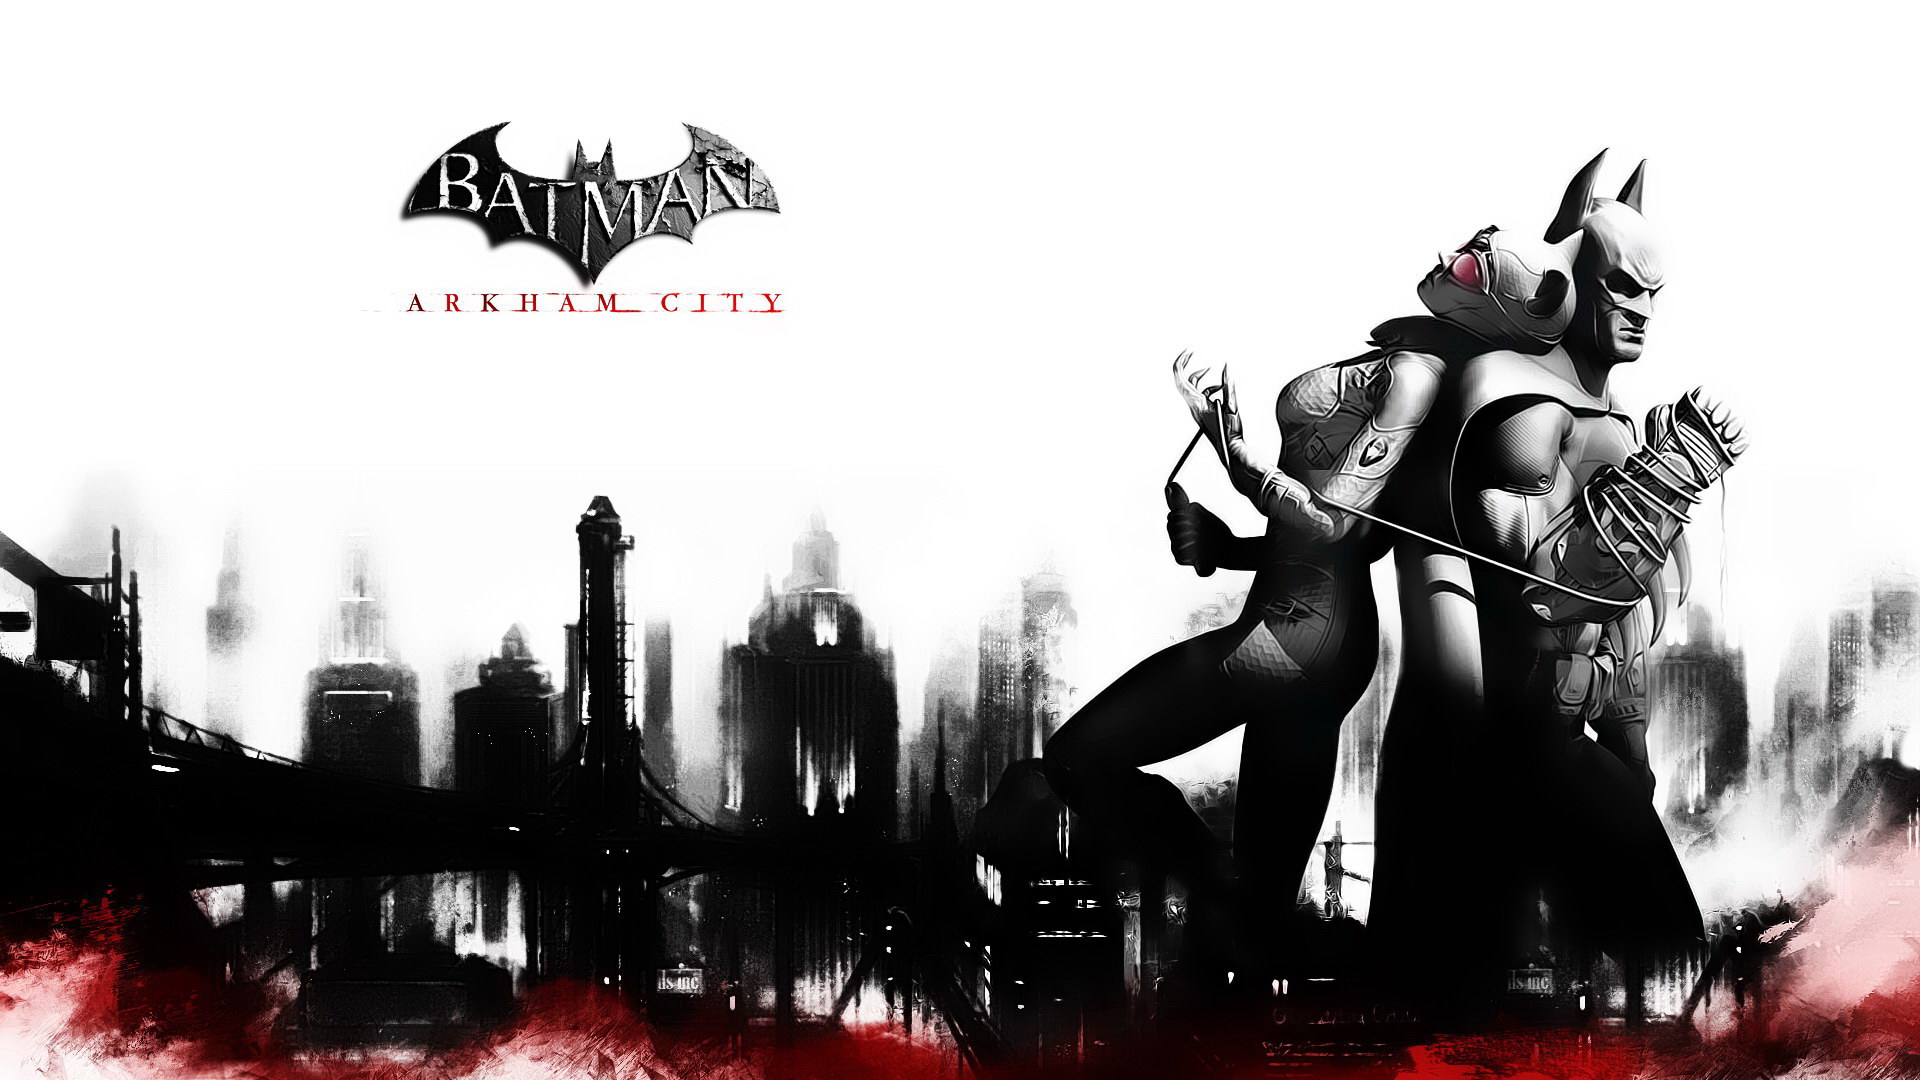 Descarga gratuita de fondo de pantalla para móvil de Batman: Arkham City, Hombre Murciélago, Videojuego.